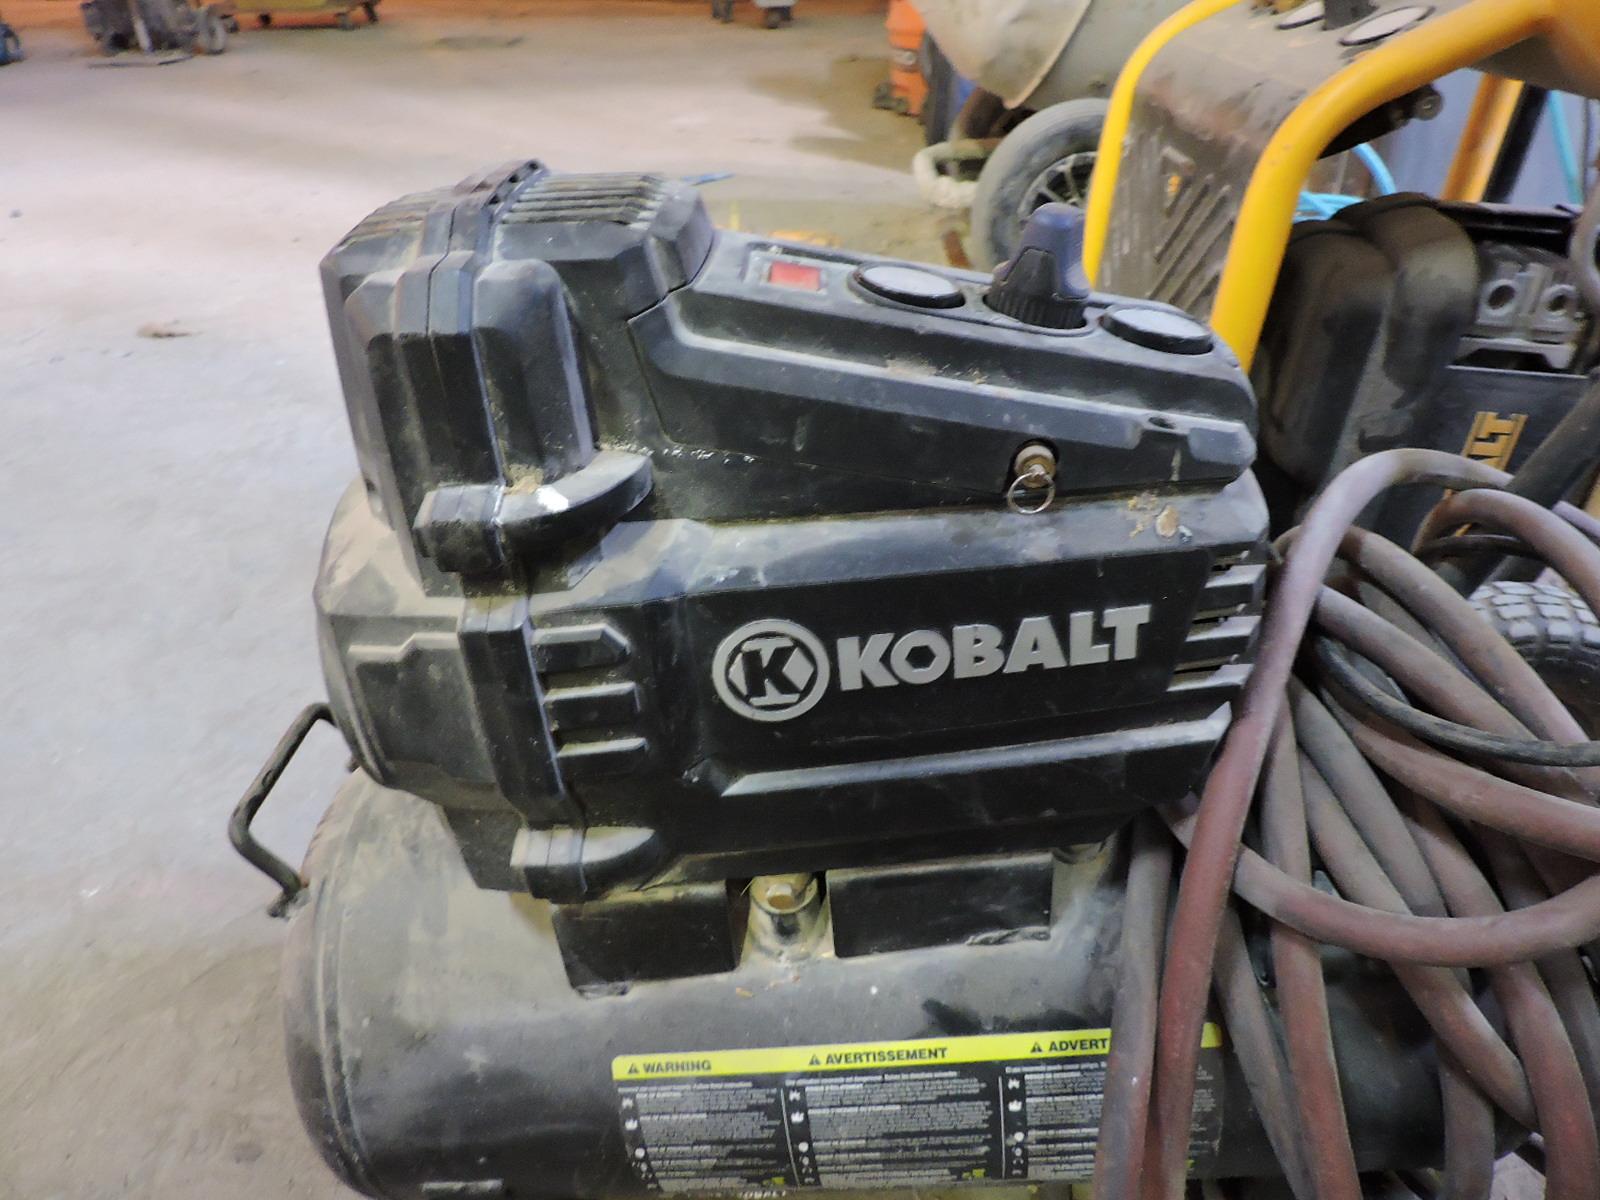 KOBALT 8 Gallon / 150 PSI Portable Air Compressor with Hose